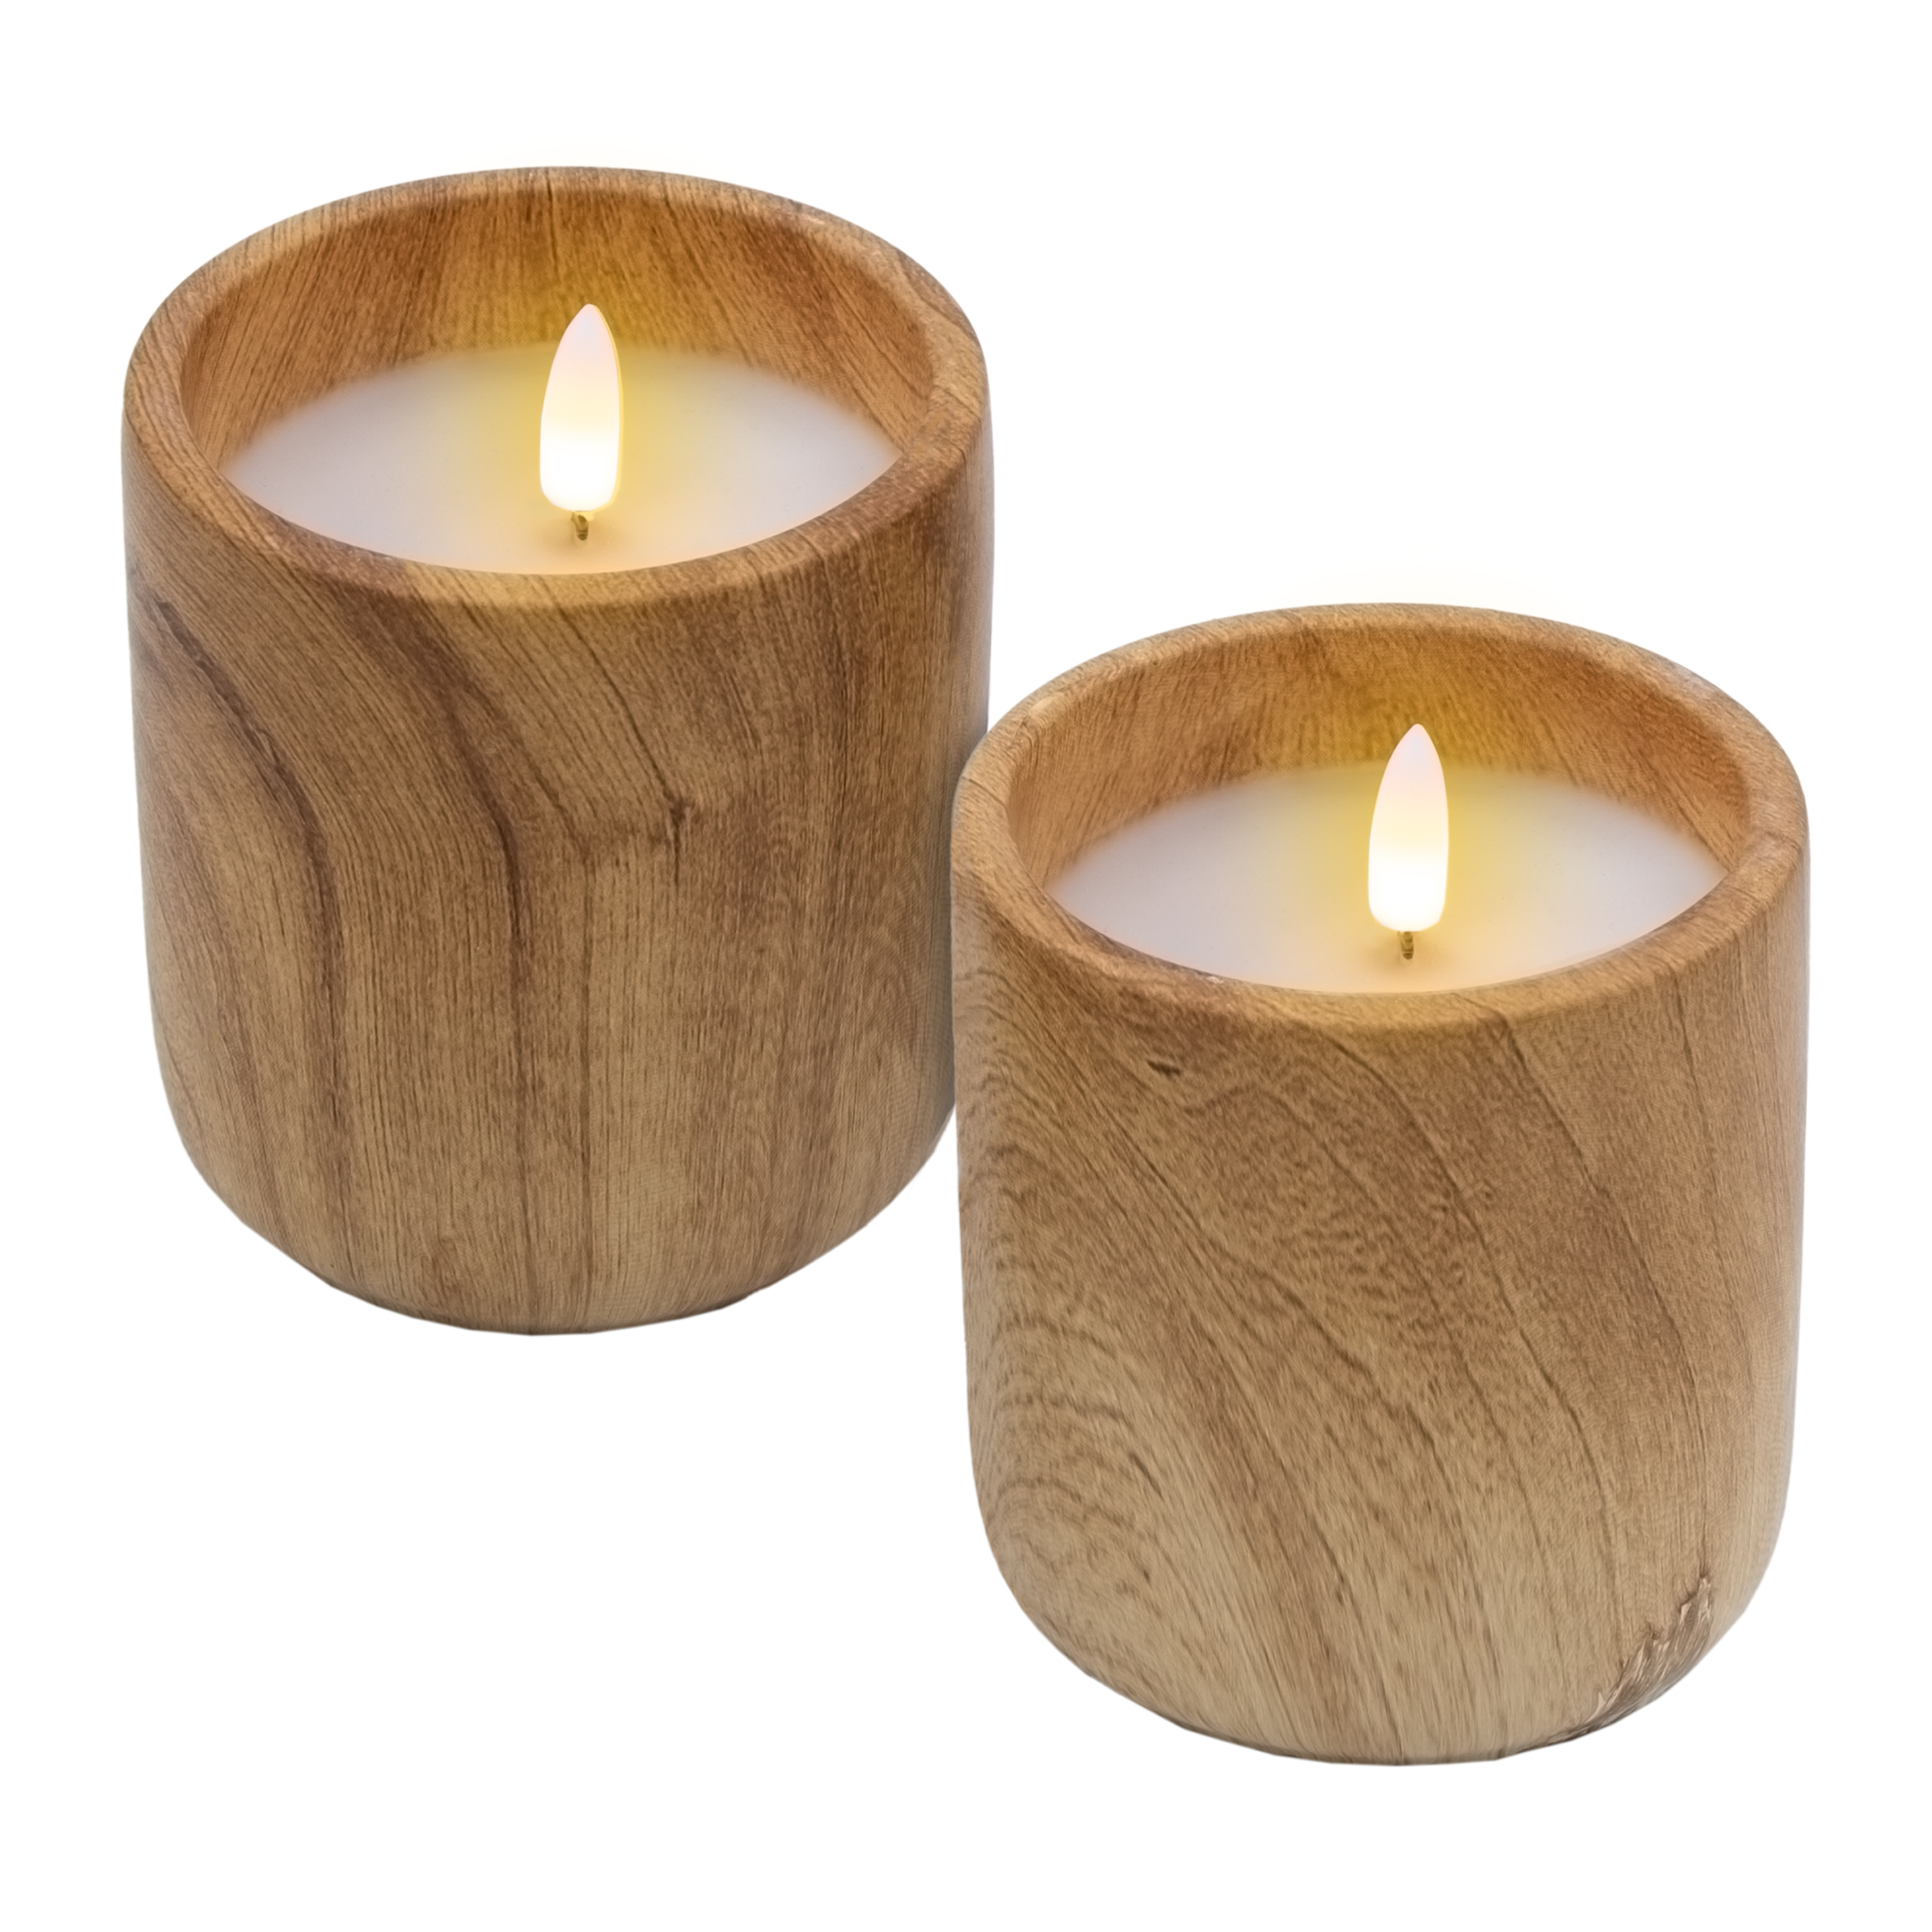 LED Keramik Kerze mit Holz Optik 10 x 9 cm - 2er Set - Künstliche Kerze Batterie betrieben mit Timer